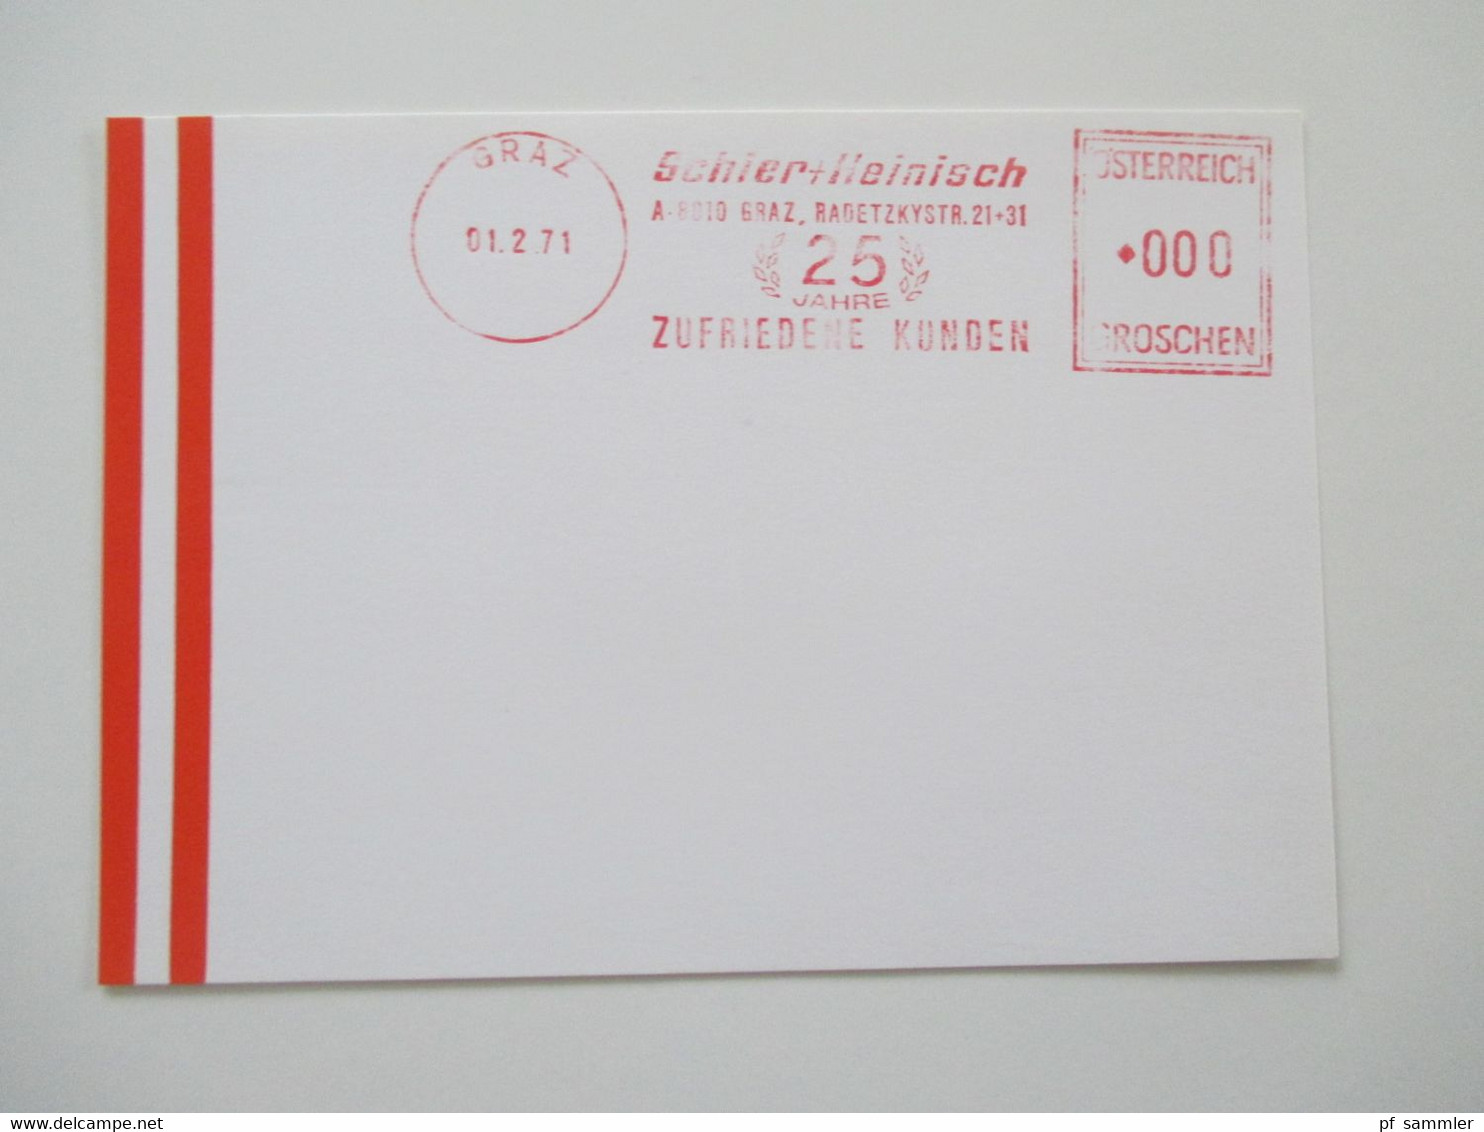 Österreich 1976 - 78 Freistempel mit Wert 0000 Groschen insgesamt 29 Stempelbelege / Blanko Karten alles verschiedene St